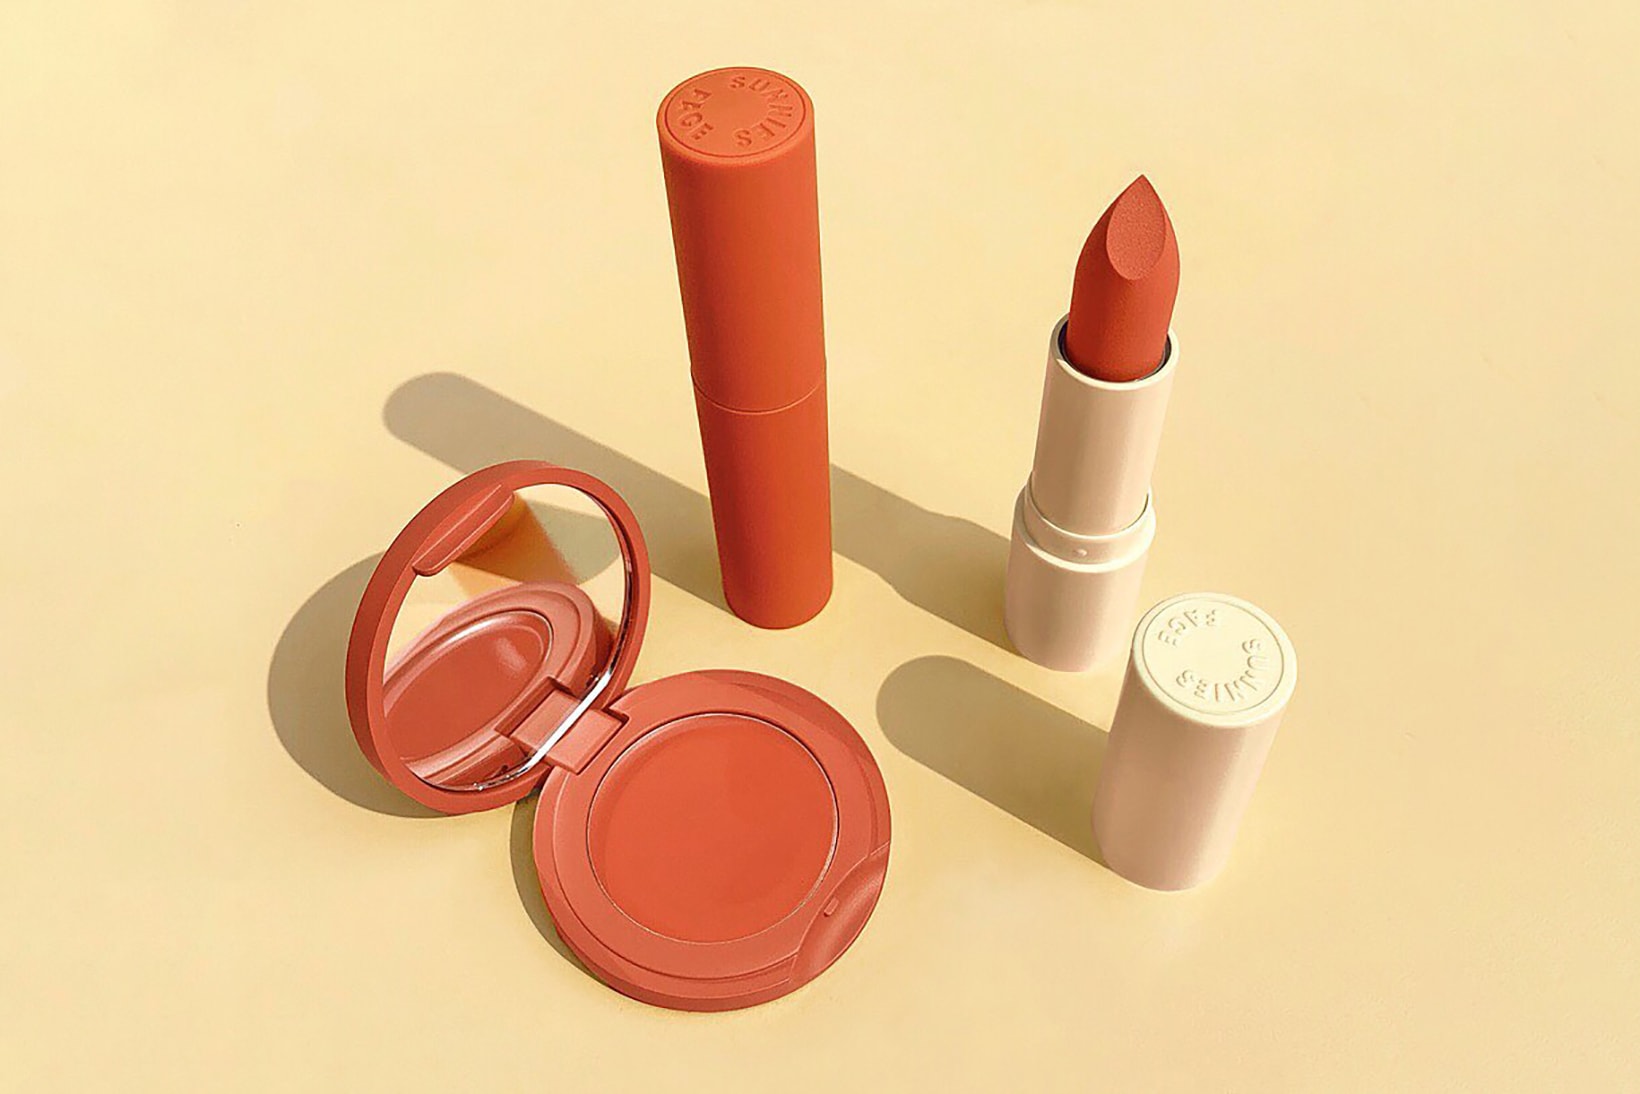 sunnies face philippines beauty brand lip dip fluffmatte lipsticks blush makeup 